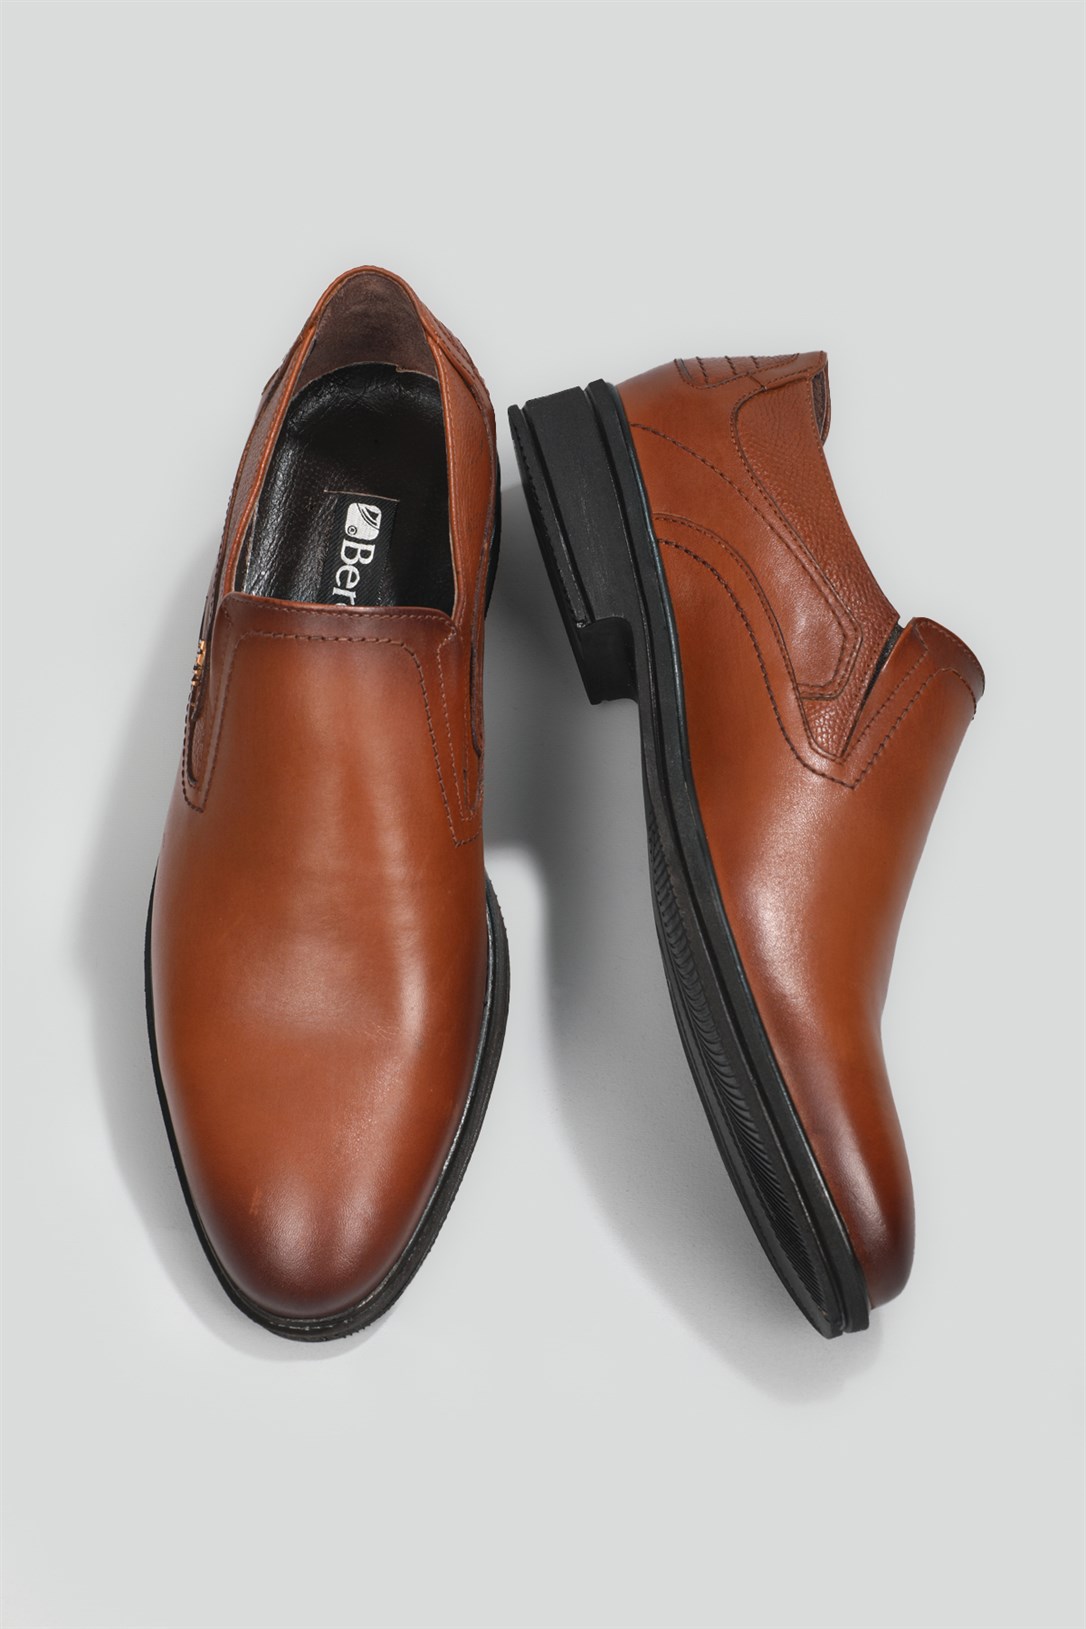 Berenni Deri Klasik Taba Erkek Ayakkabı 570 | Ayakkabı City